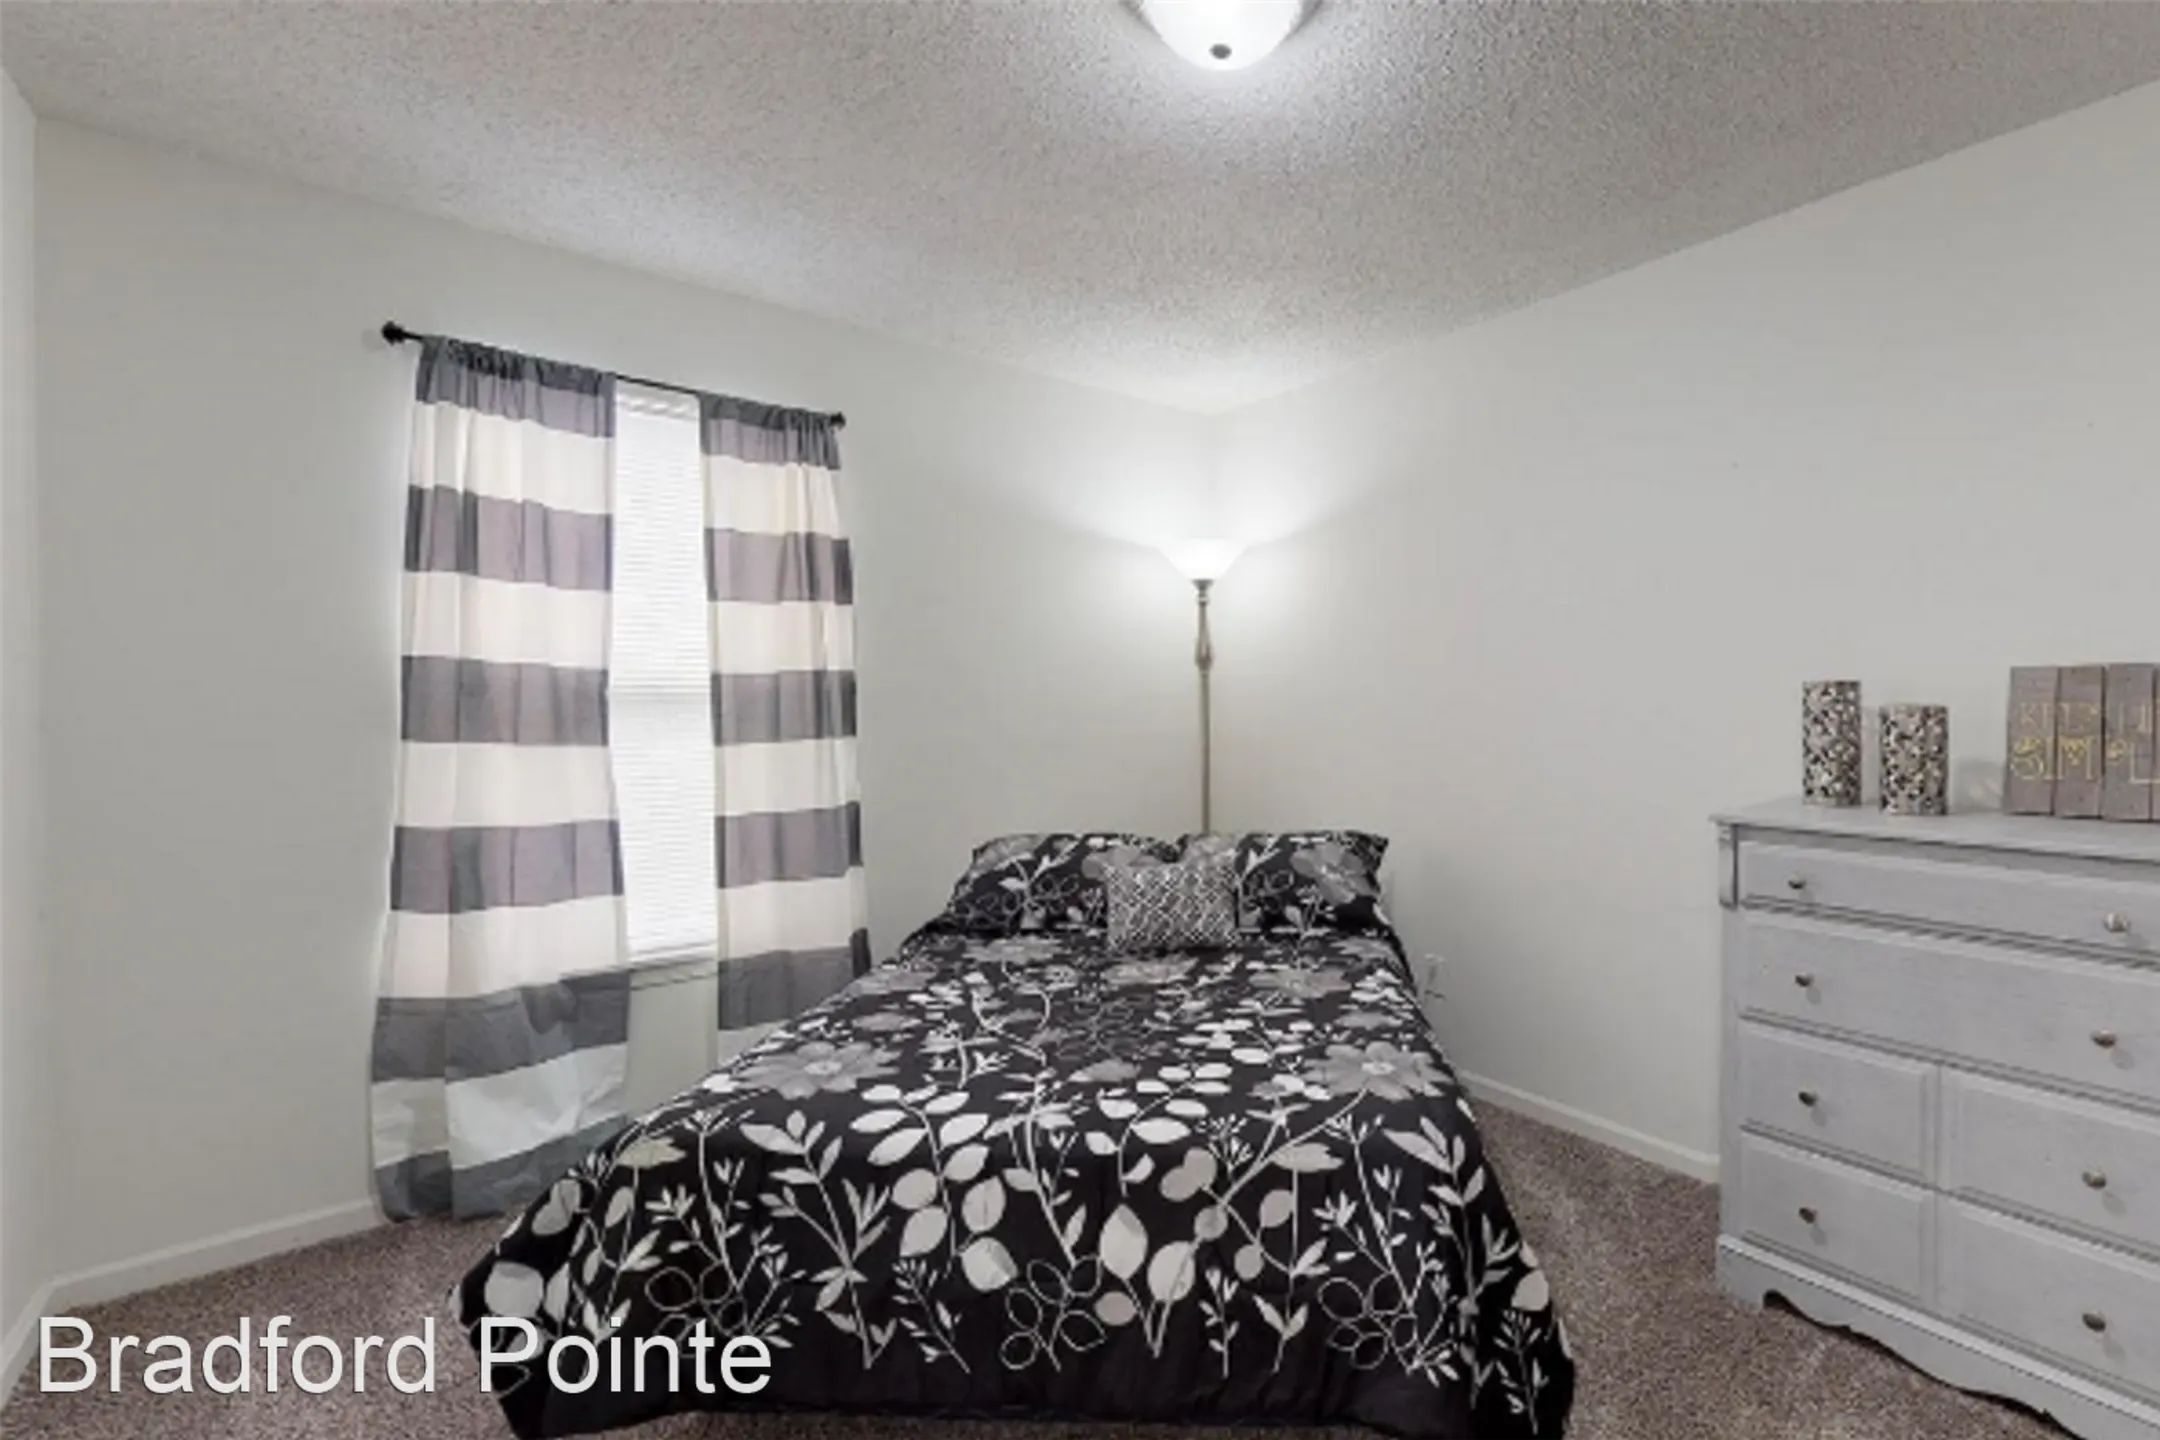 Bradford Pointe Apartments - Evansville, IN